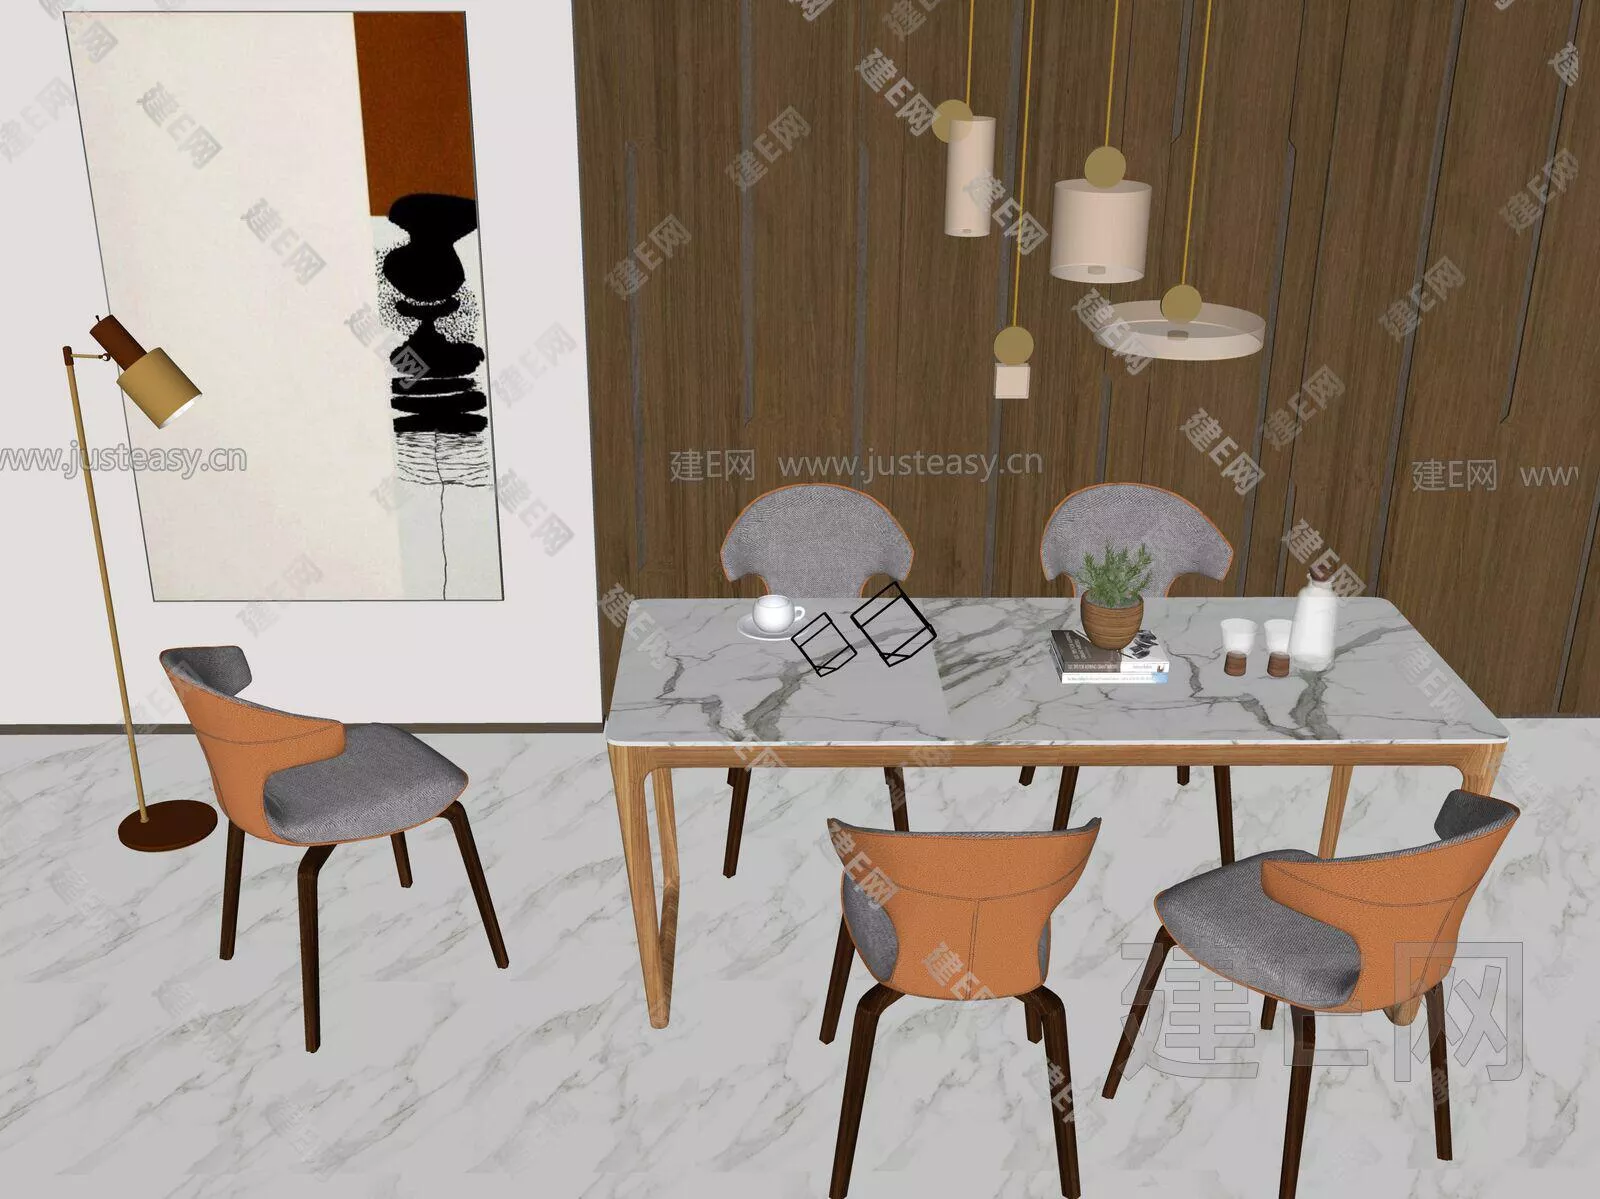 MODERN DINING TABLE SET - SKETCHUP 3D MODEL - ENSCAPE - 112017790